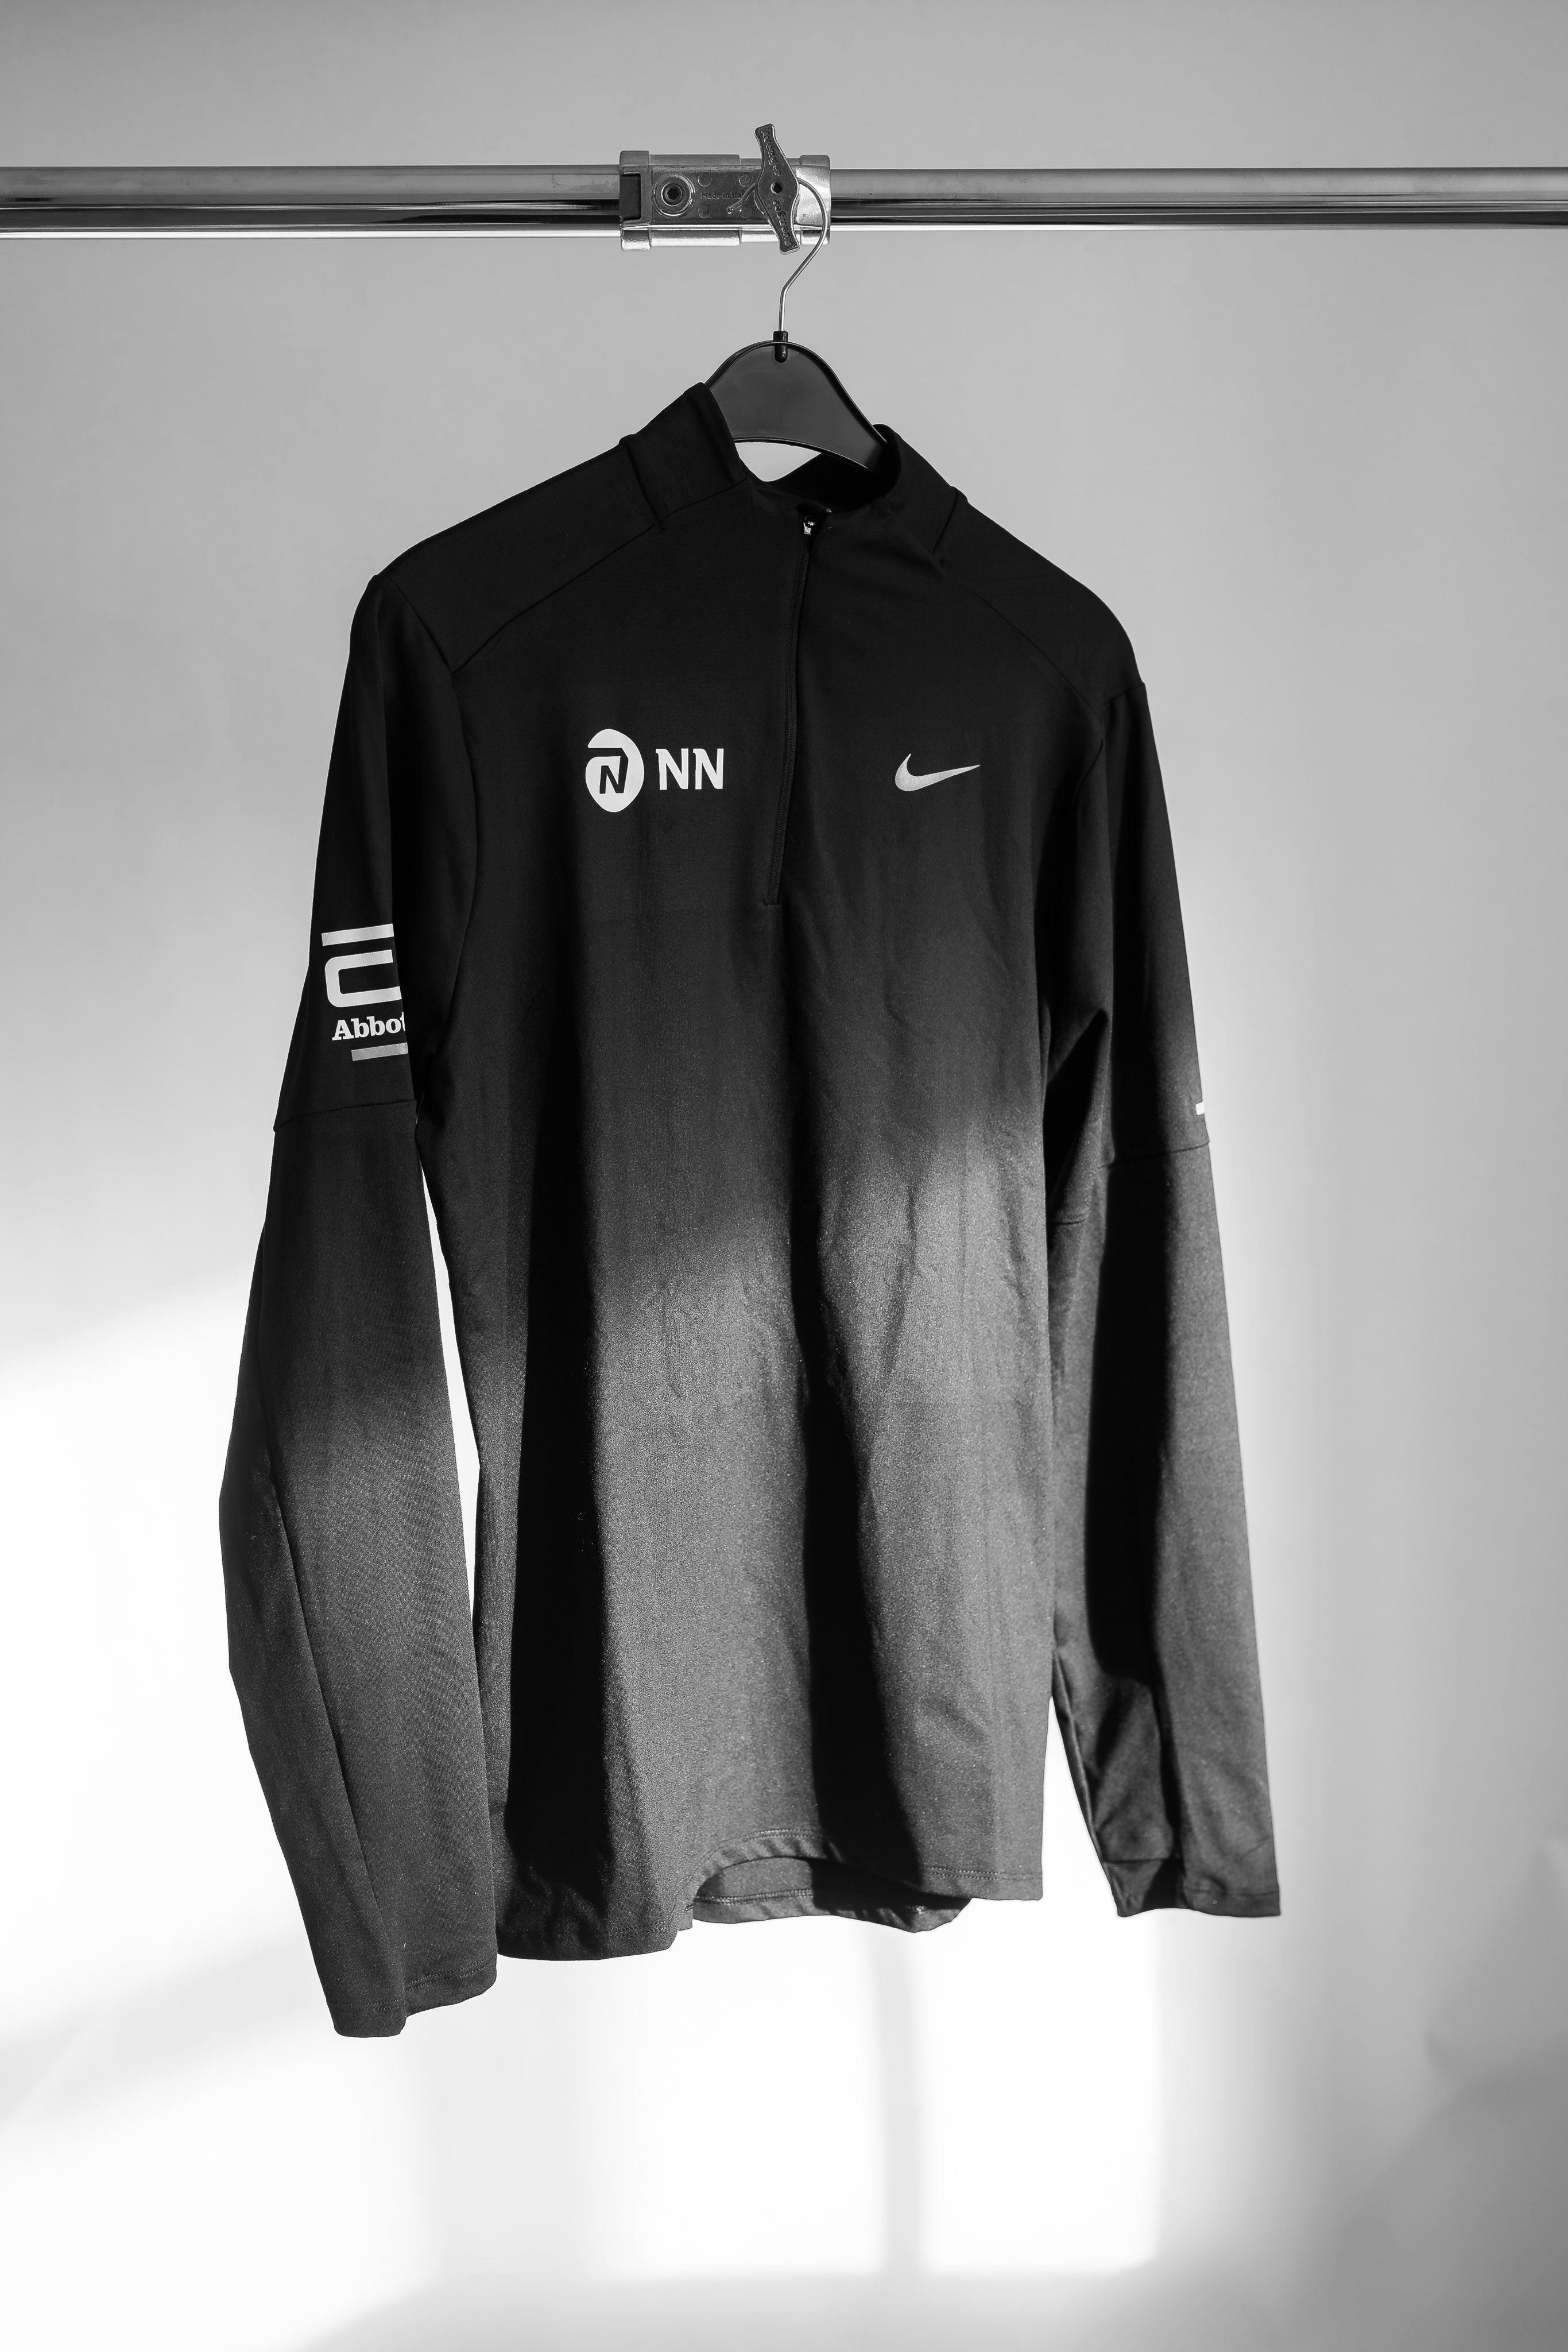 トレーニング・エクササイズ【Sサイズ】NN Running Team Long Sleeve